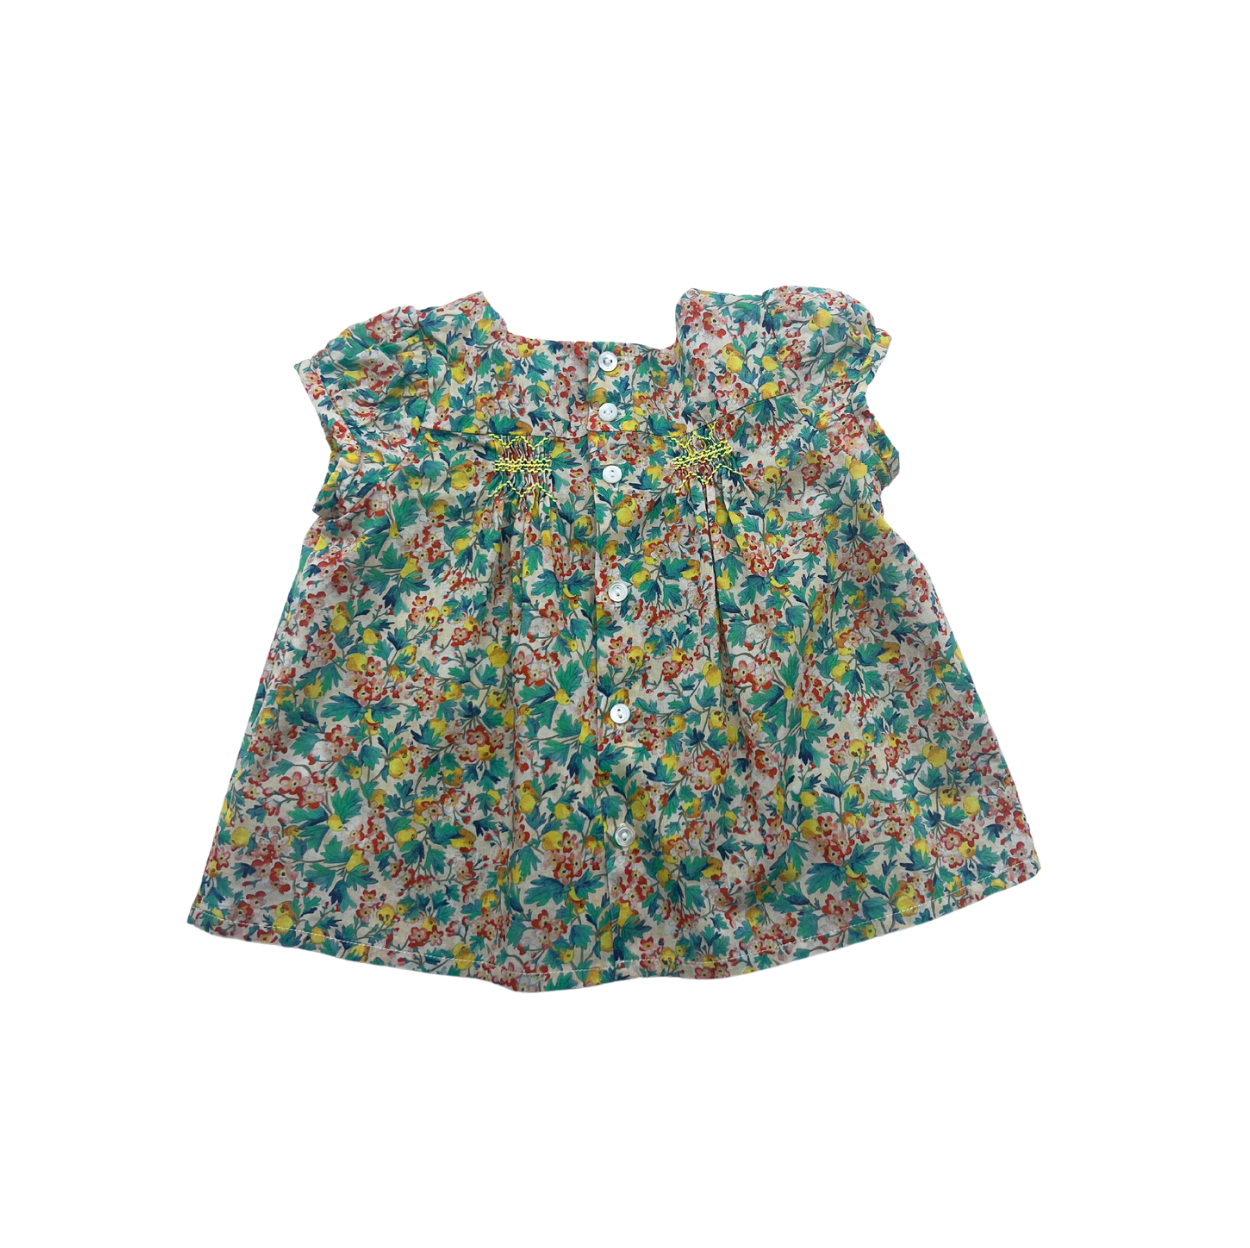 BONPOINT - Liberty floral blouse - 12 months